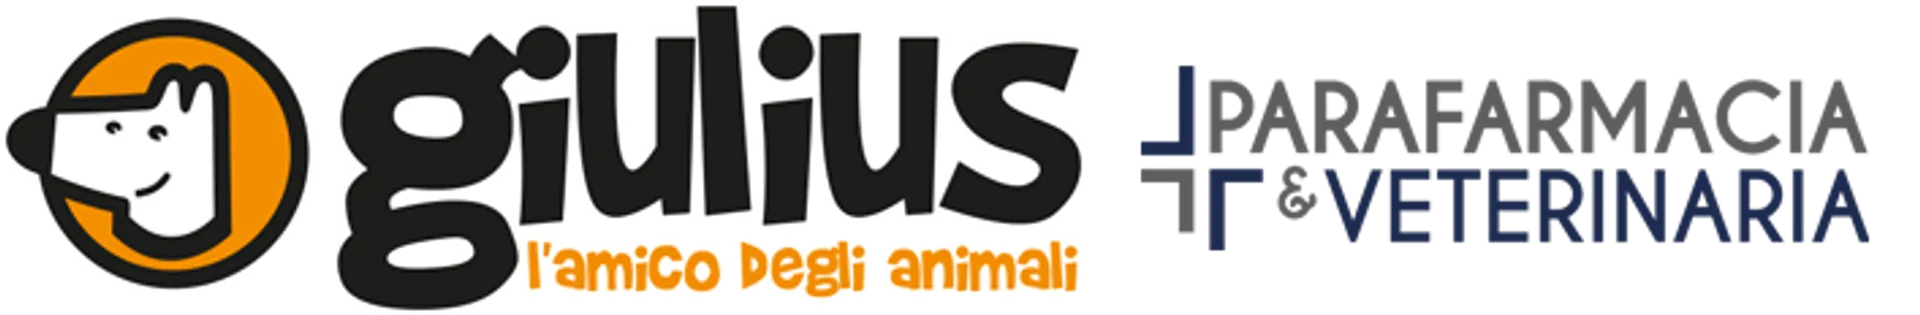 GIULUIS logo